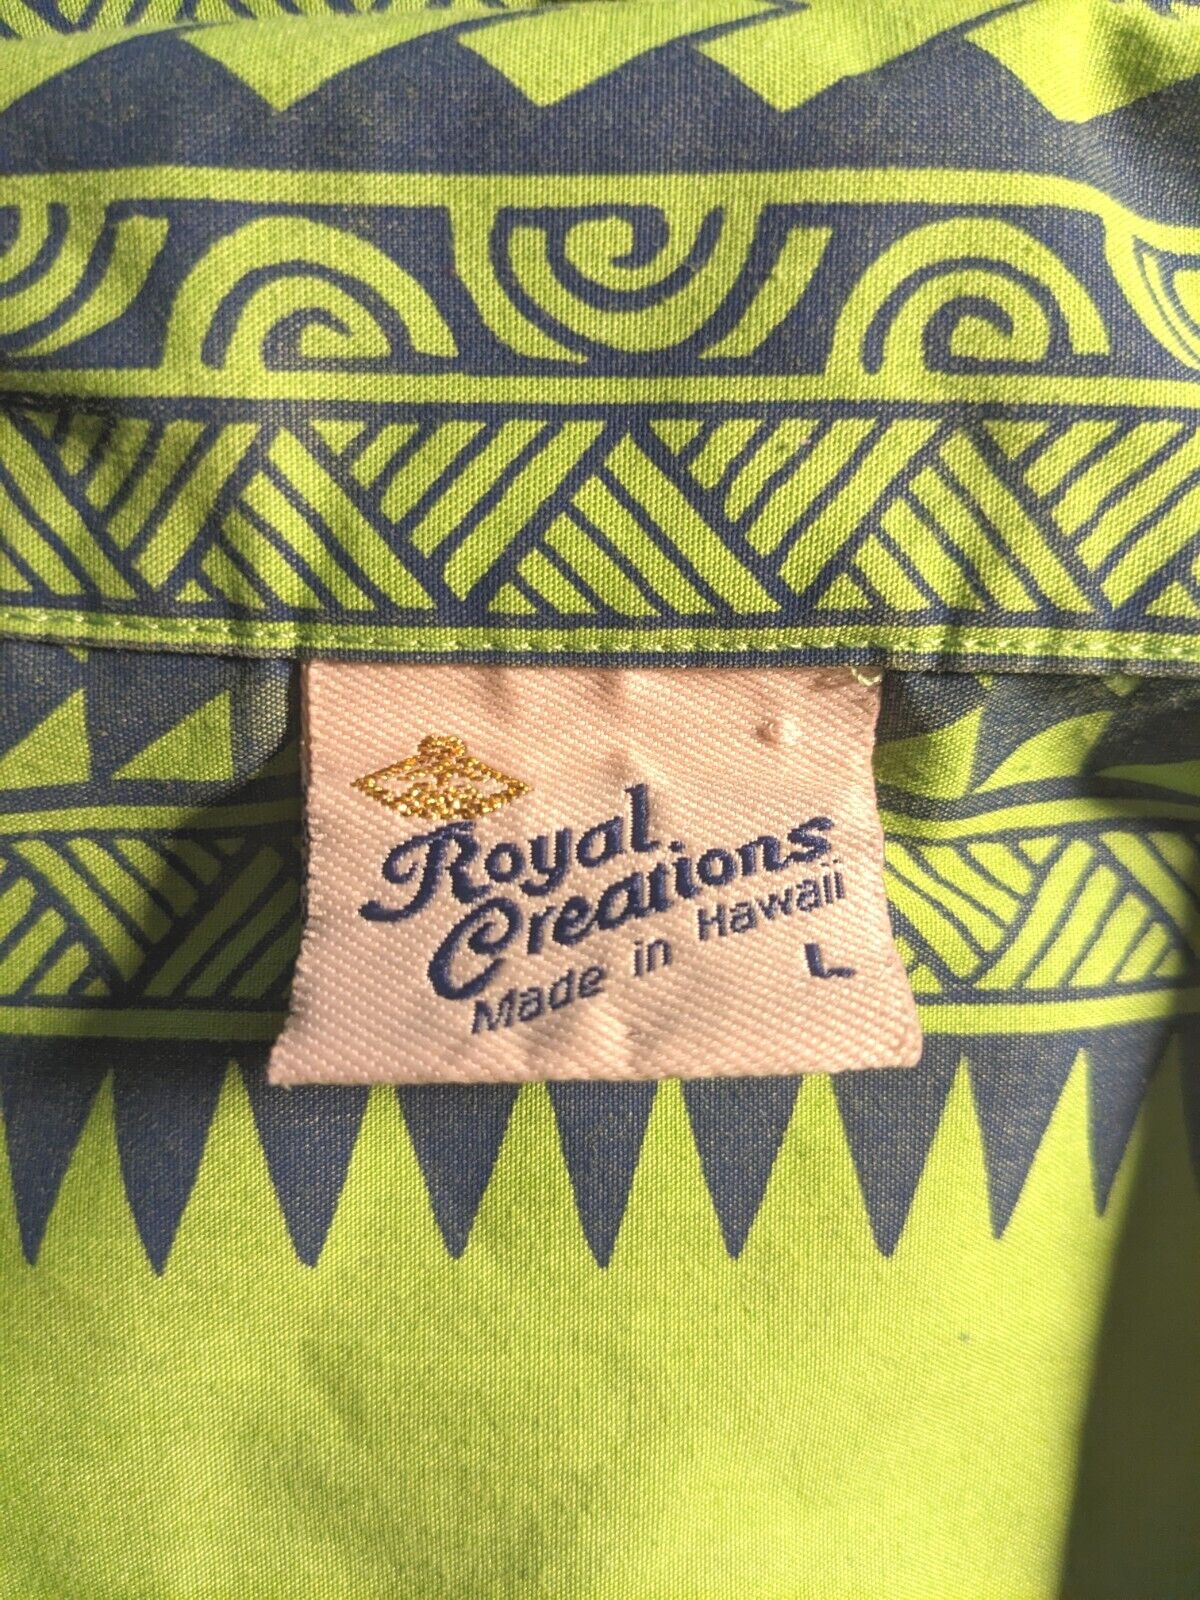 Hawaiian Green Shirt Royal Creations Large Shirt - image 4